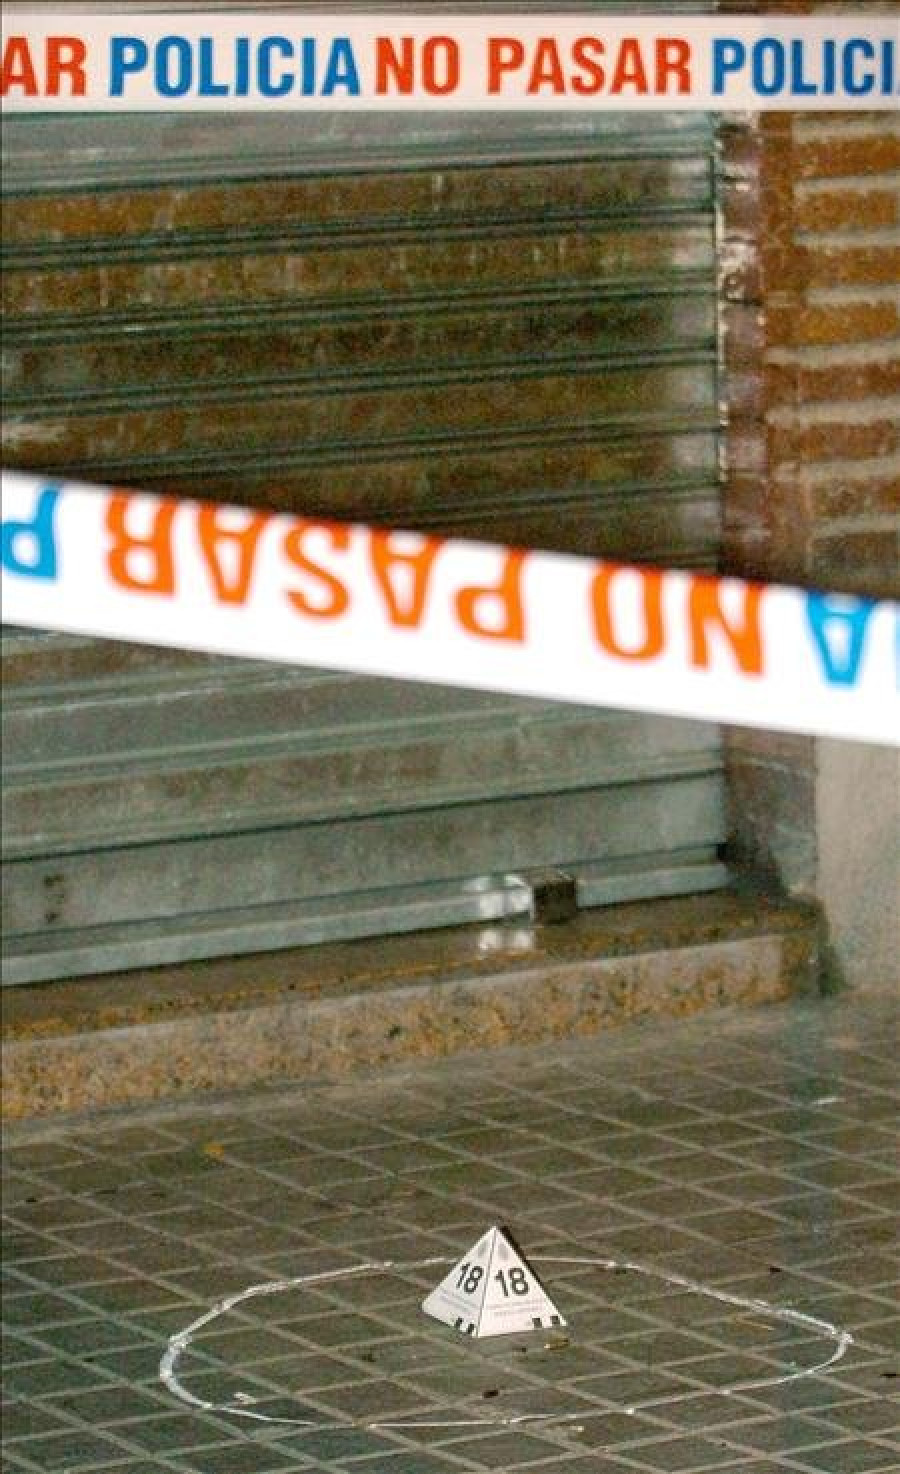 Un hombre dispara en la Rambla de Barcelona y hiere al menos a dos personas